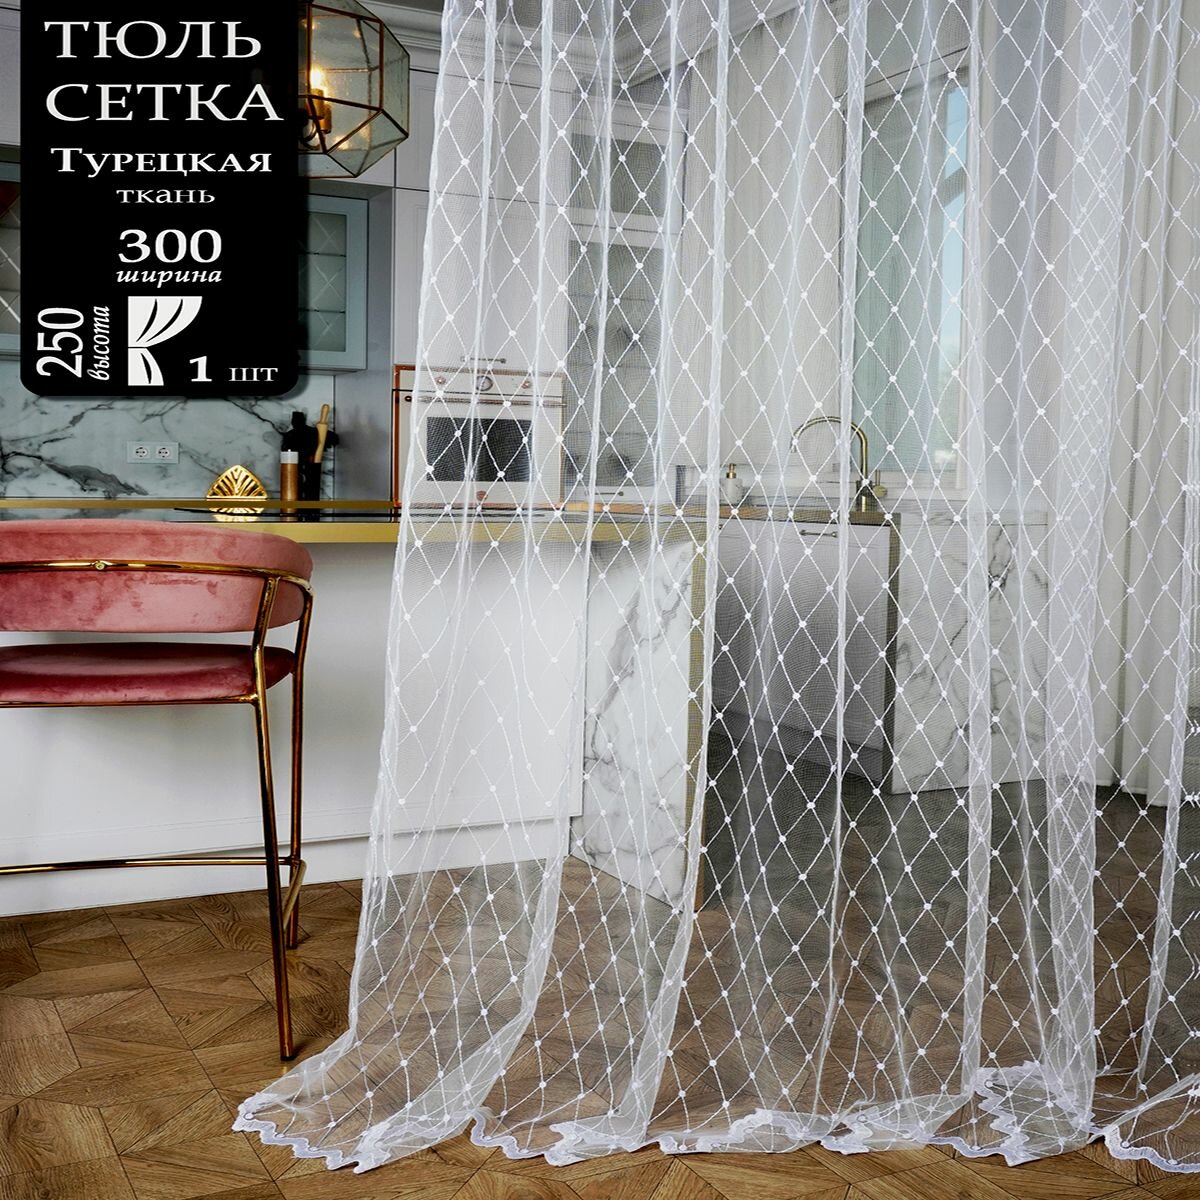 Тюль сетка для комнаты и кухни с вышивкой высота 250 см ширина 300 см крепление - Лента цвет - Белый